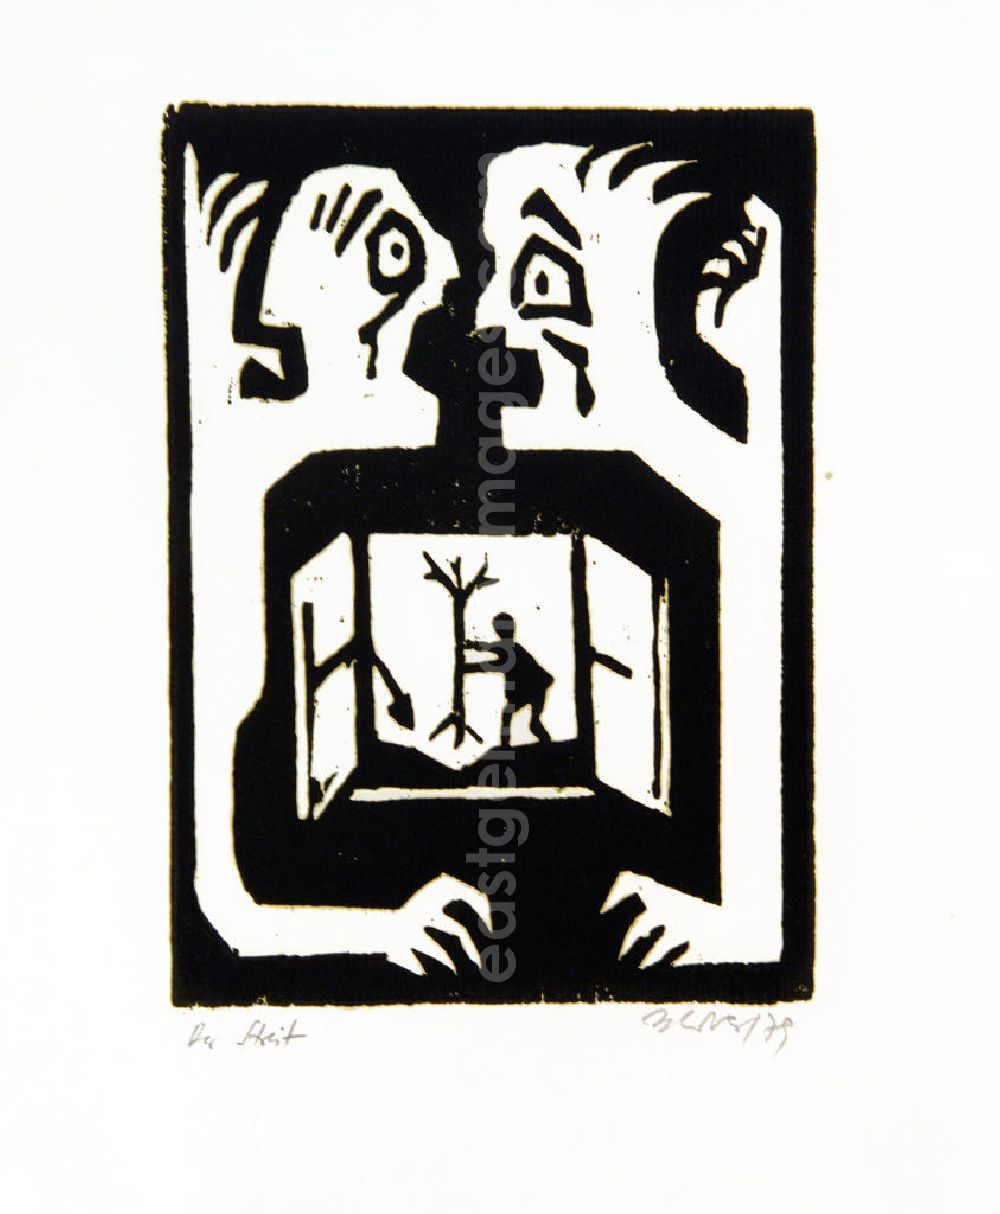 Berlin: Grafik von Herbert Sandberg Der Streit aus dem Jahr 1979, 15,0x20,6cm Holzschnitt, handsigniert, 4/3